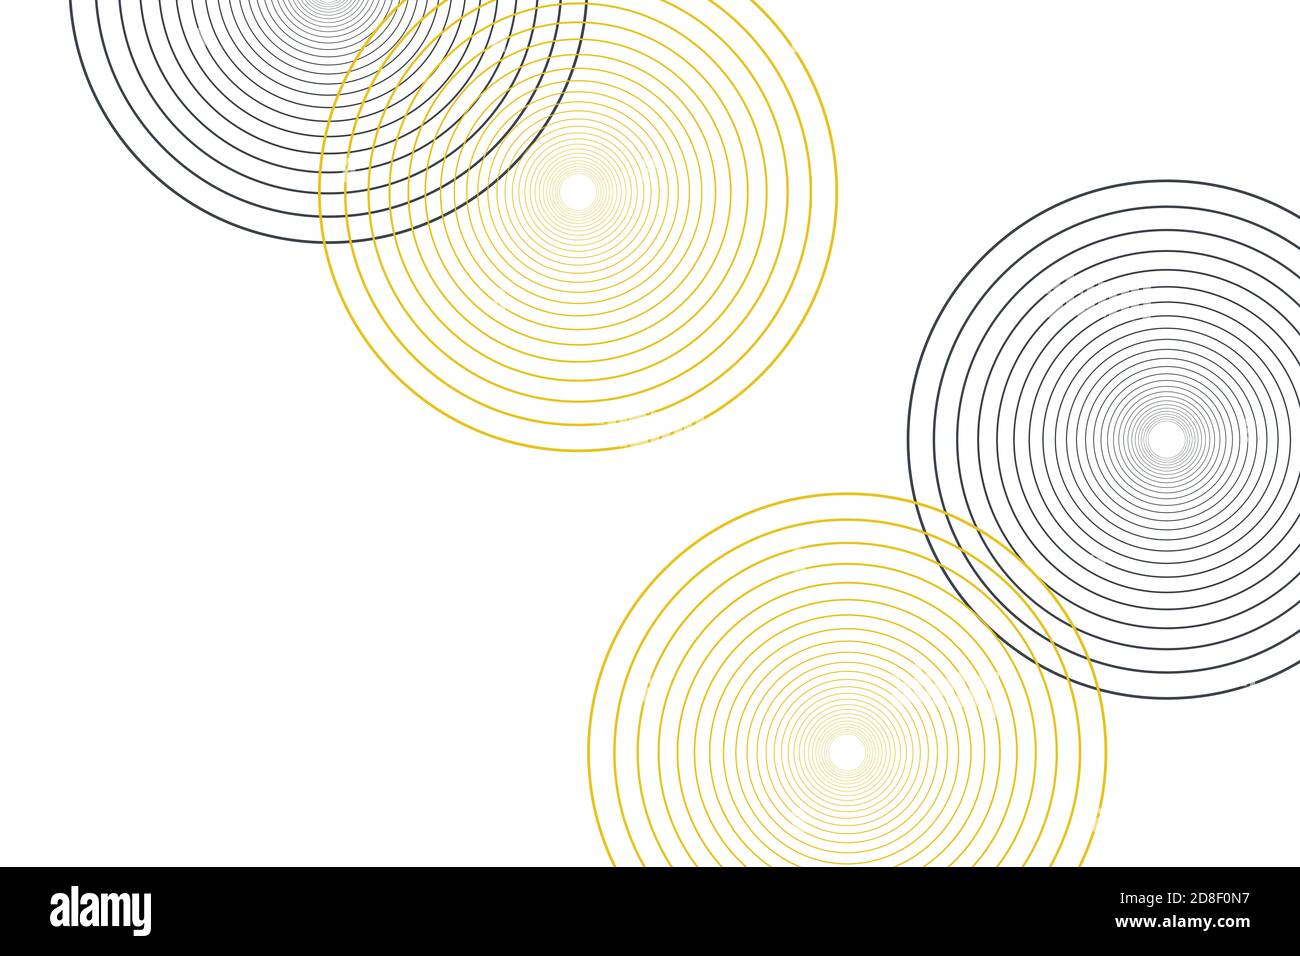 Abstrakter Hintergrund mit dünnen Linien bilden Kreise gemacht. Moderne, einfache und elegante Vektorgrafik in Gelb und Schwarz. Stockfoto